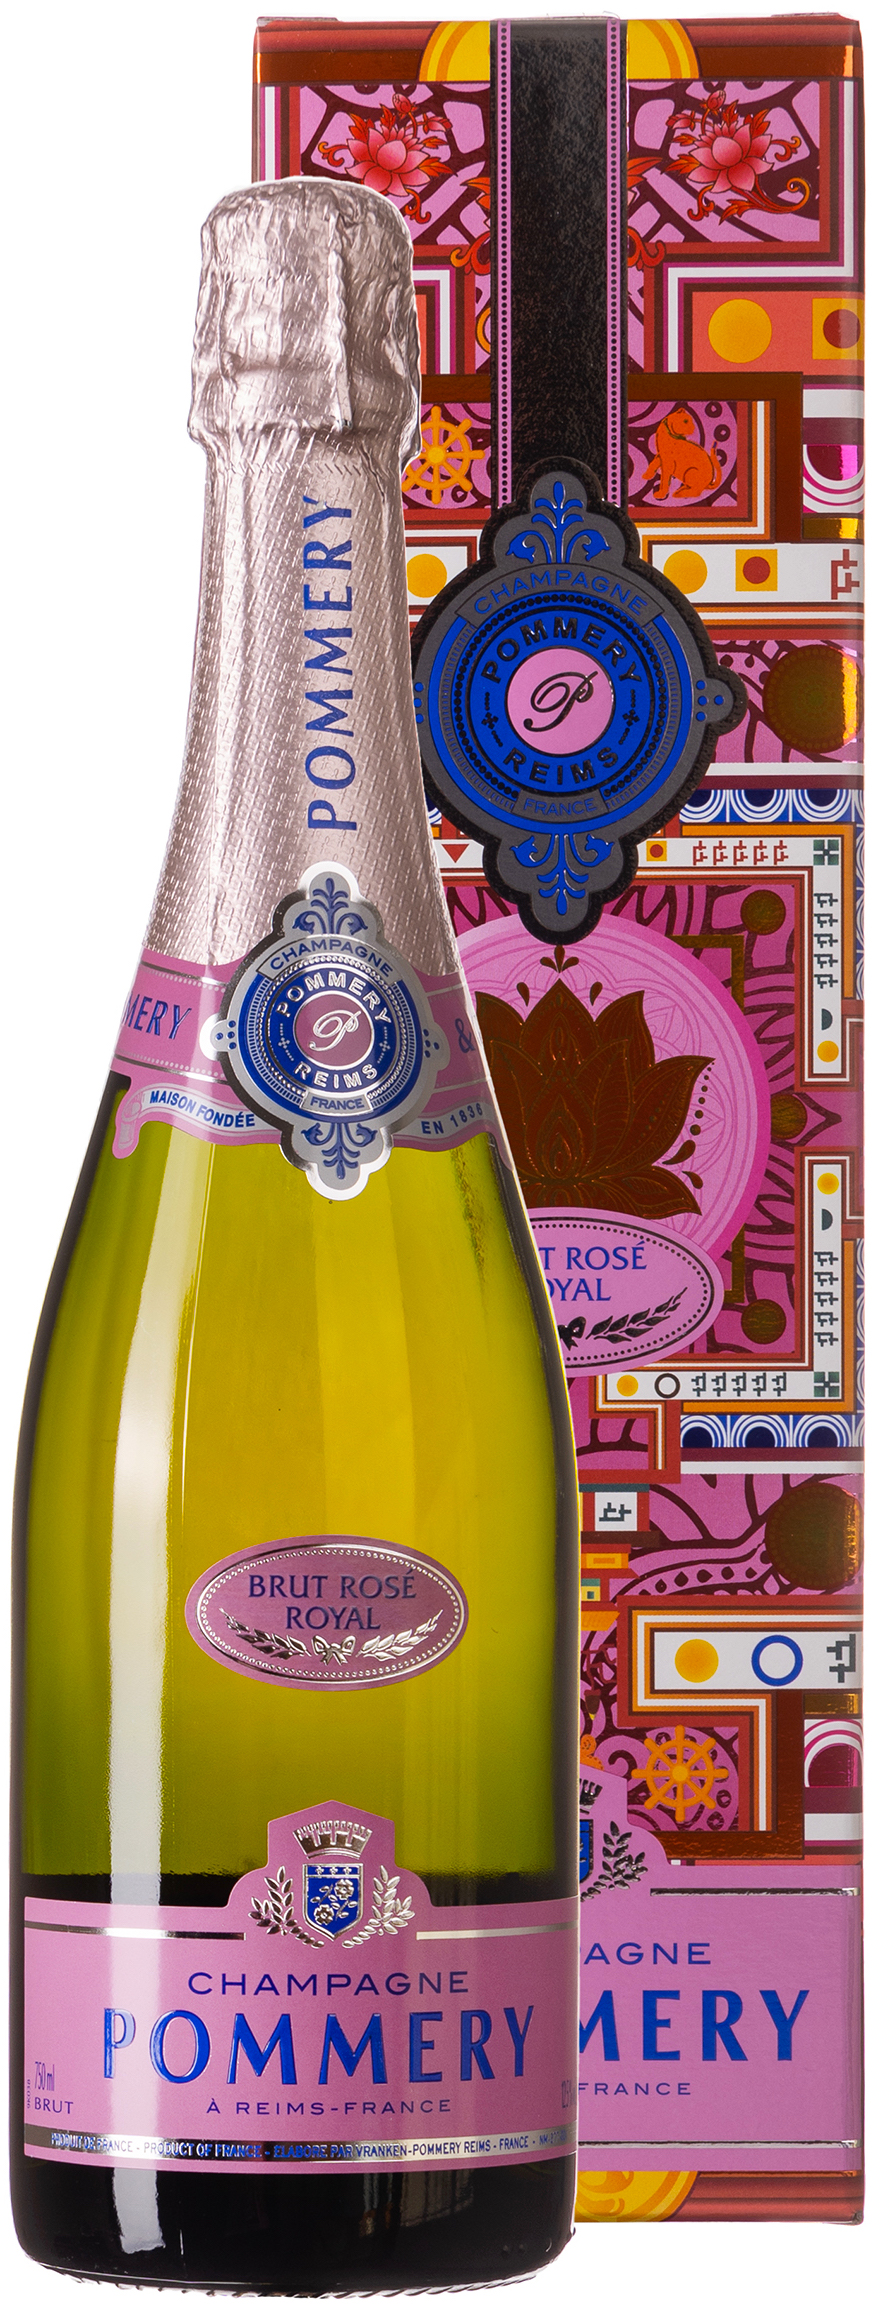 Pommery Brut Rosé Royal Champagner 12,5% vol. 0,75L | 702812